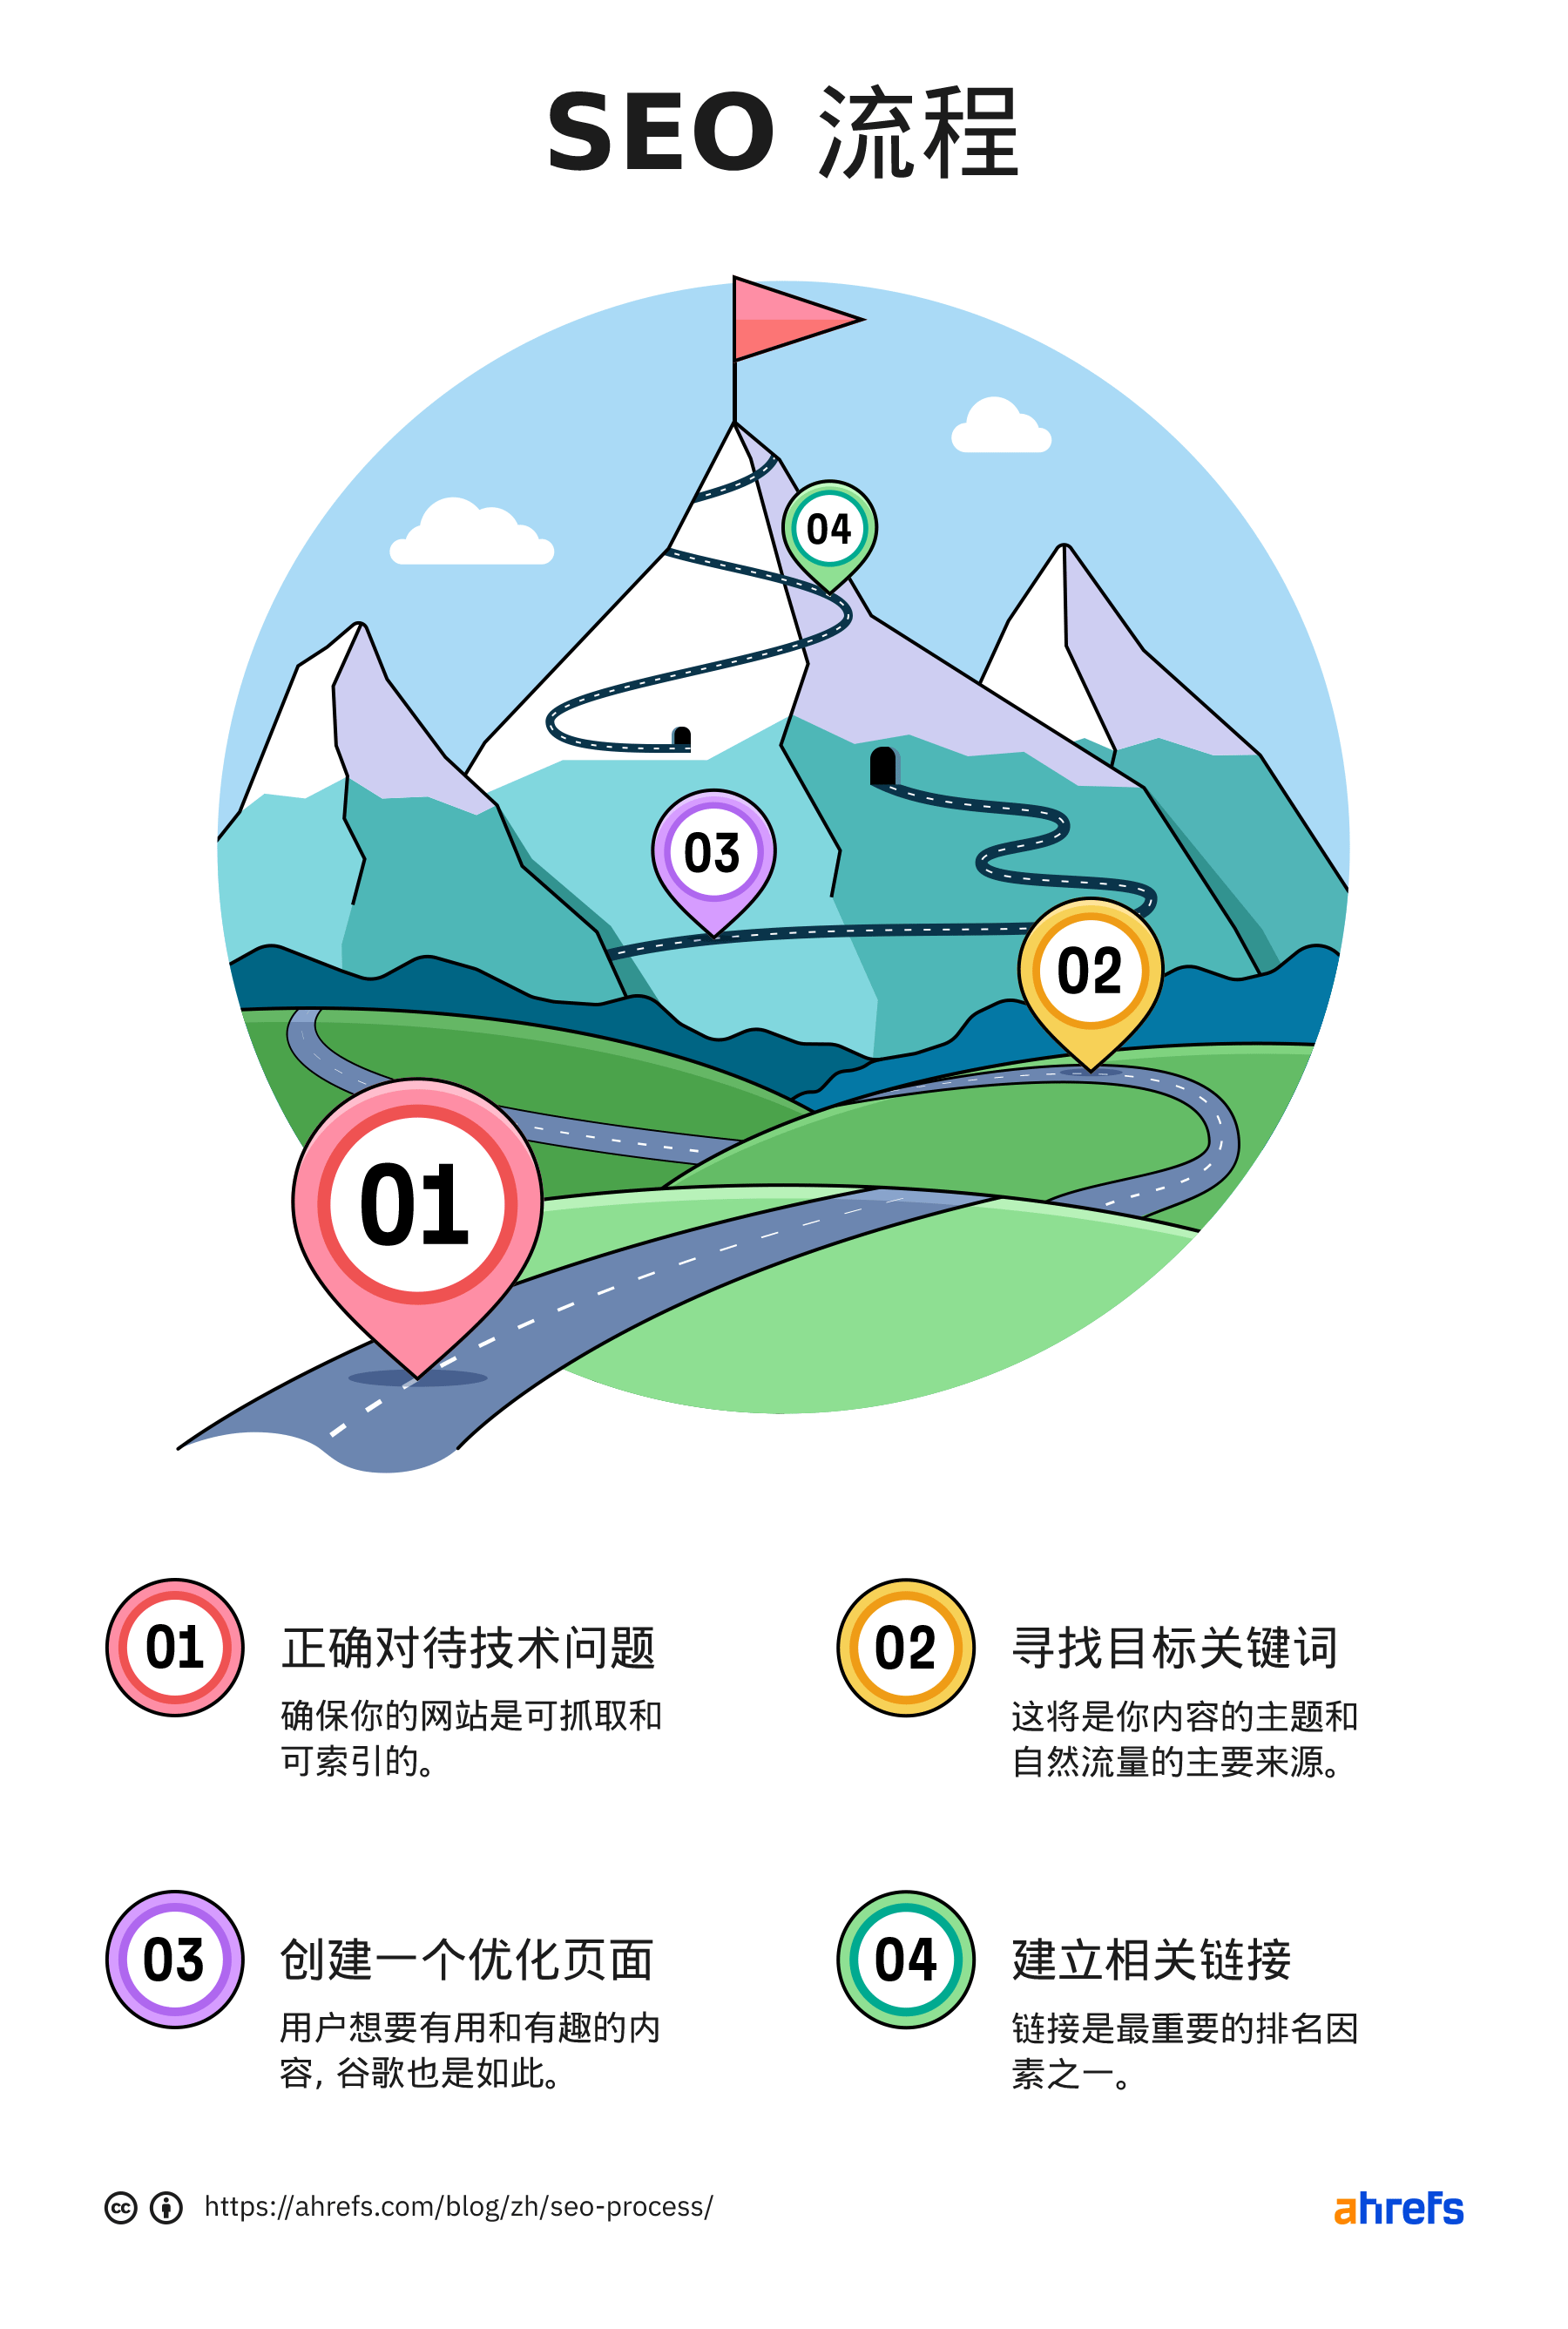 信息图显示了 SEO 过程的四个步骤；每个步骤都会引领至山上更高处。